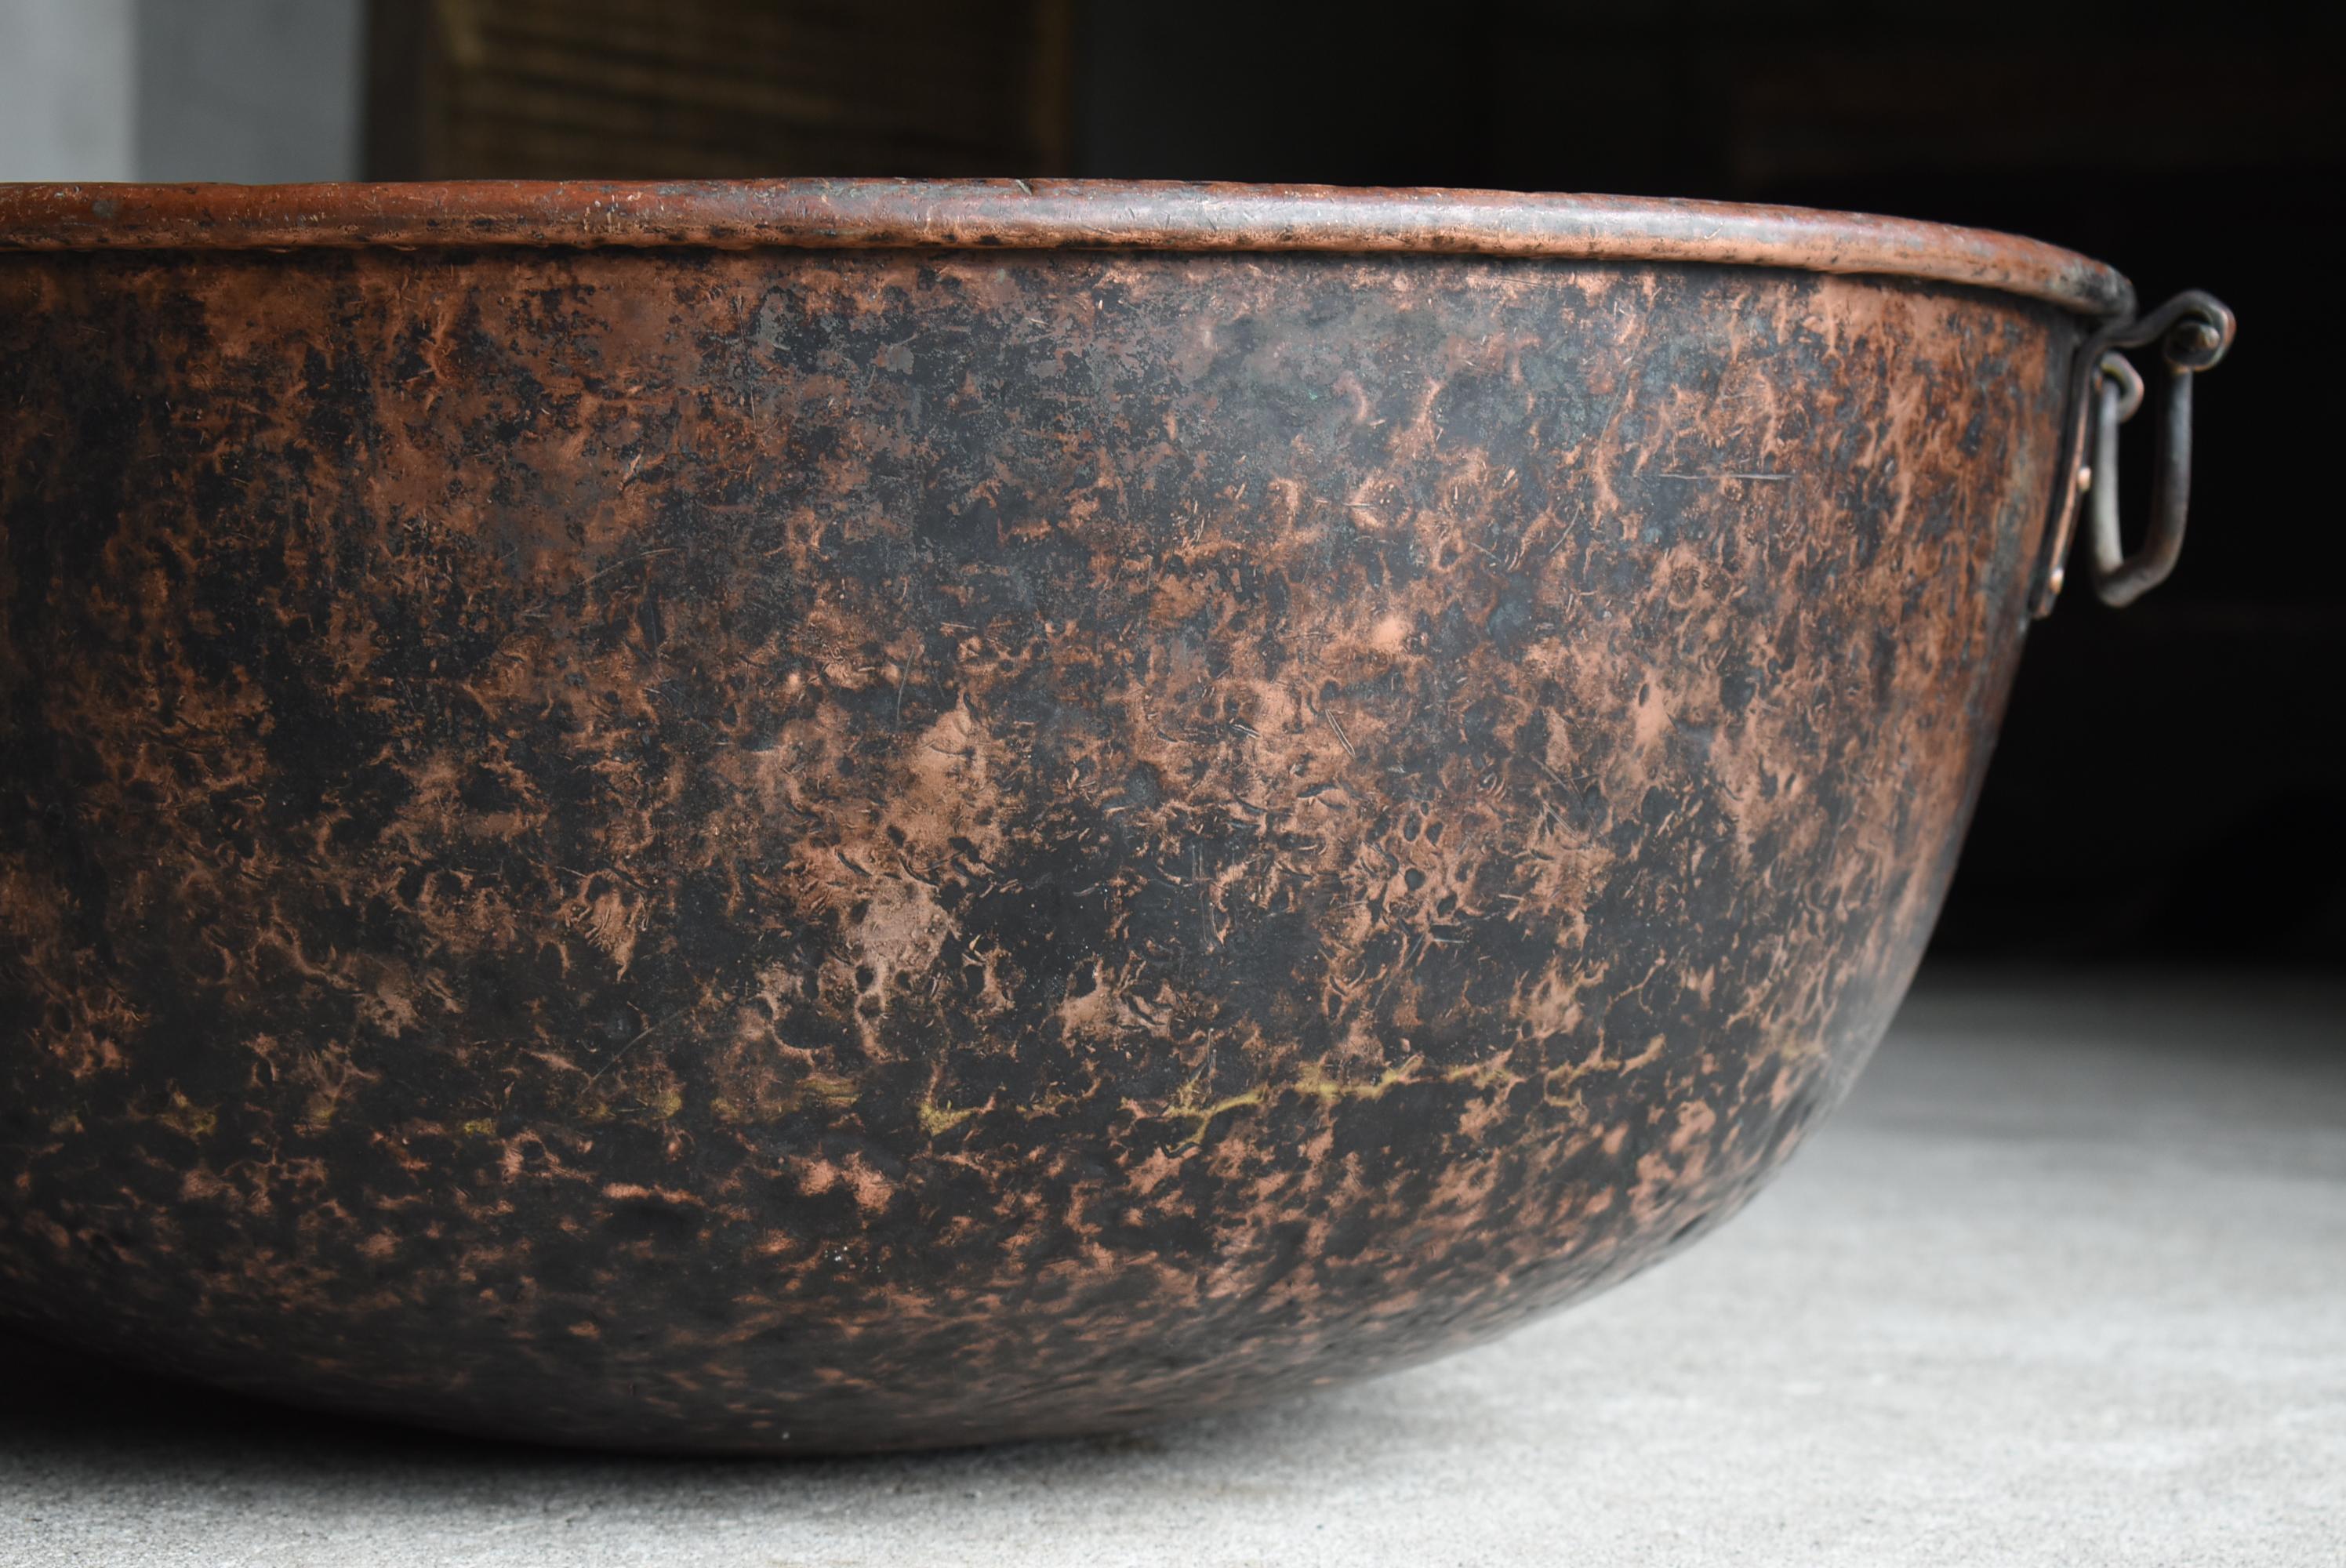 Japanese Antique Huge Copper Bowl 1900s-1940s / Flower Vase Wabi Sabi For Sale 3